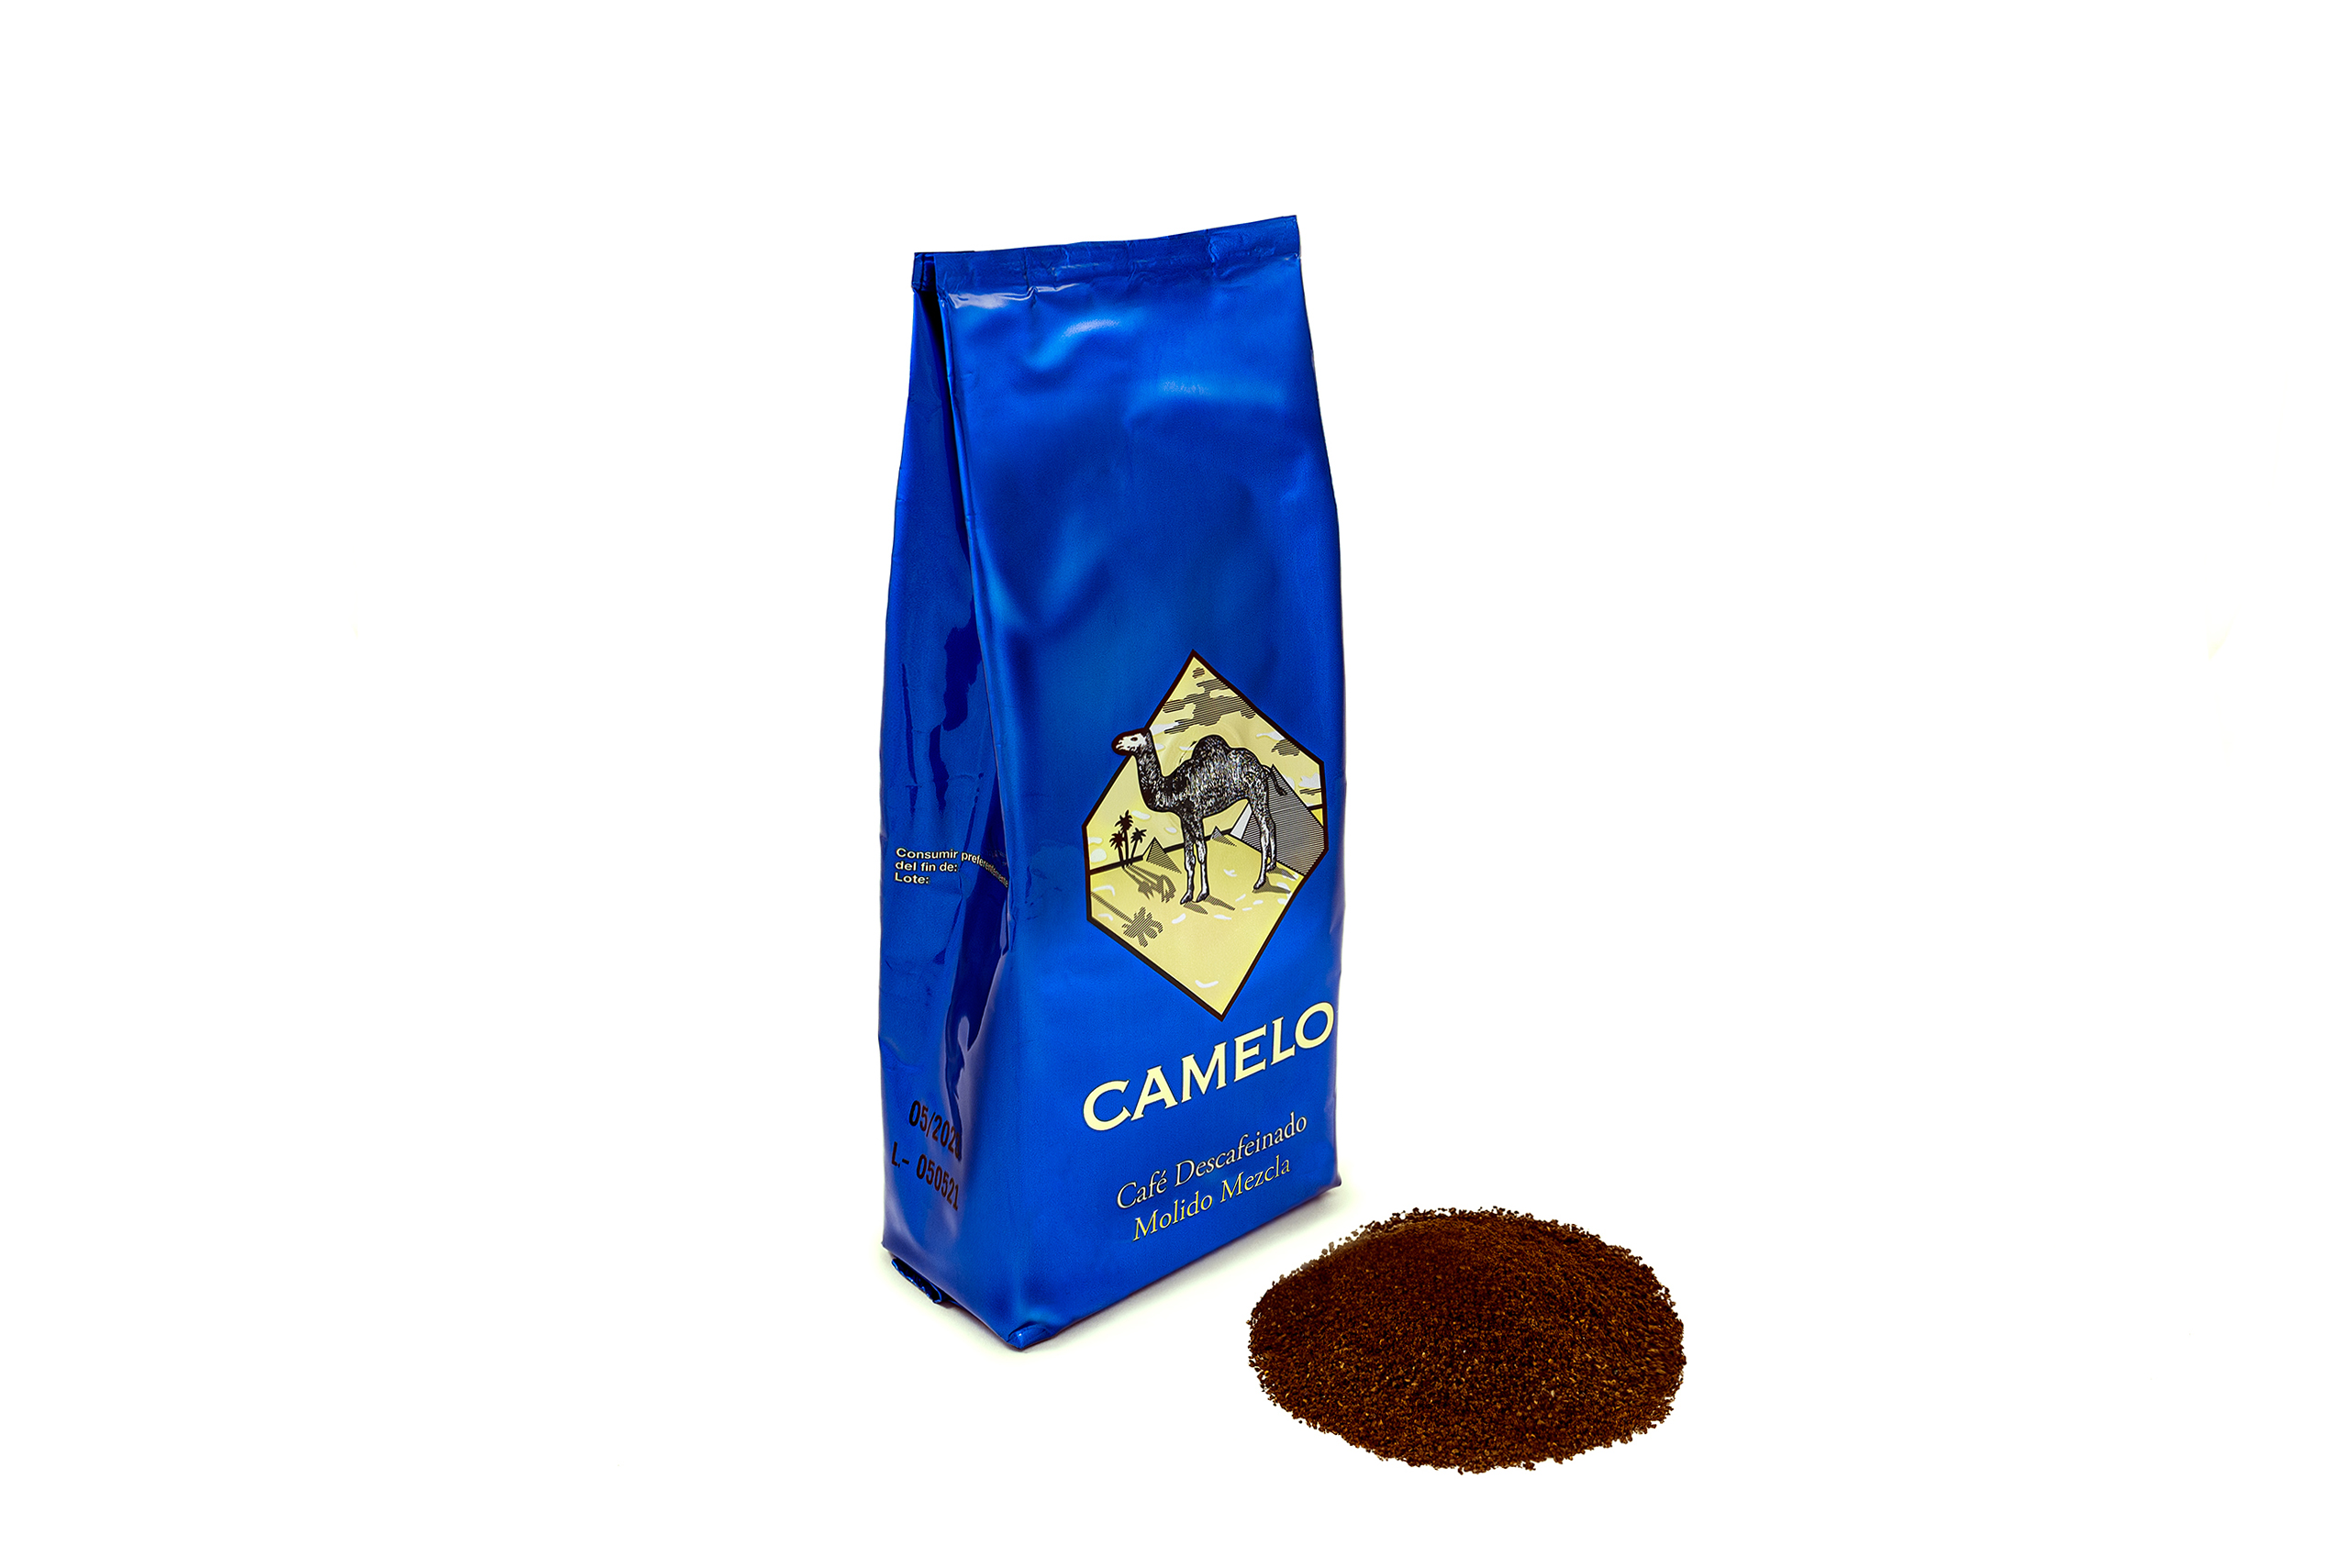 Café torrefacto descafeinado molido 250 gramos - CAMELO